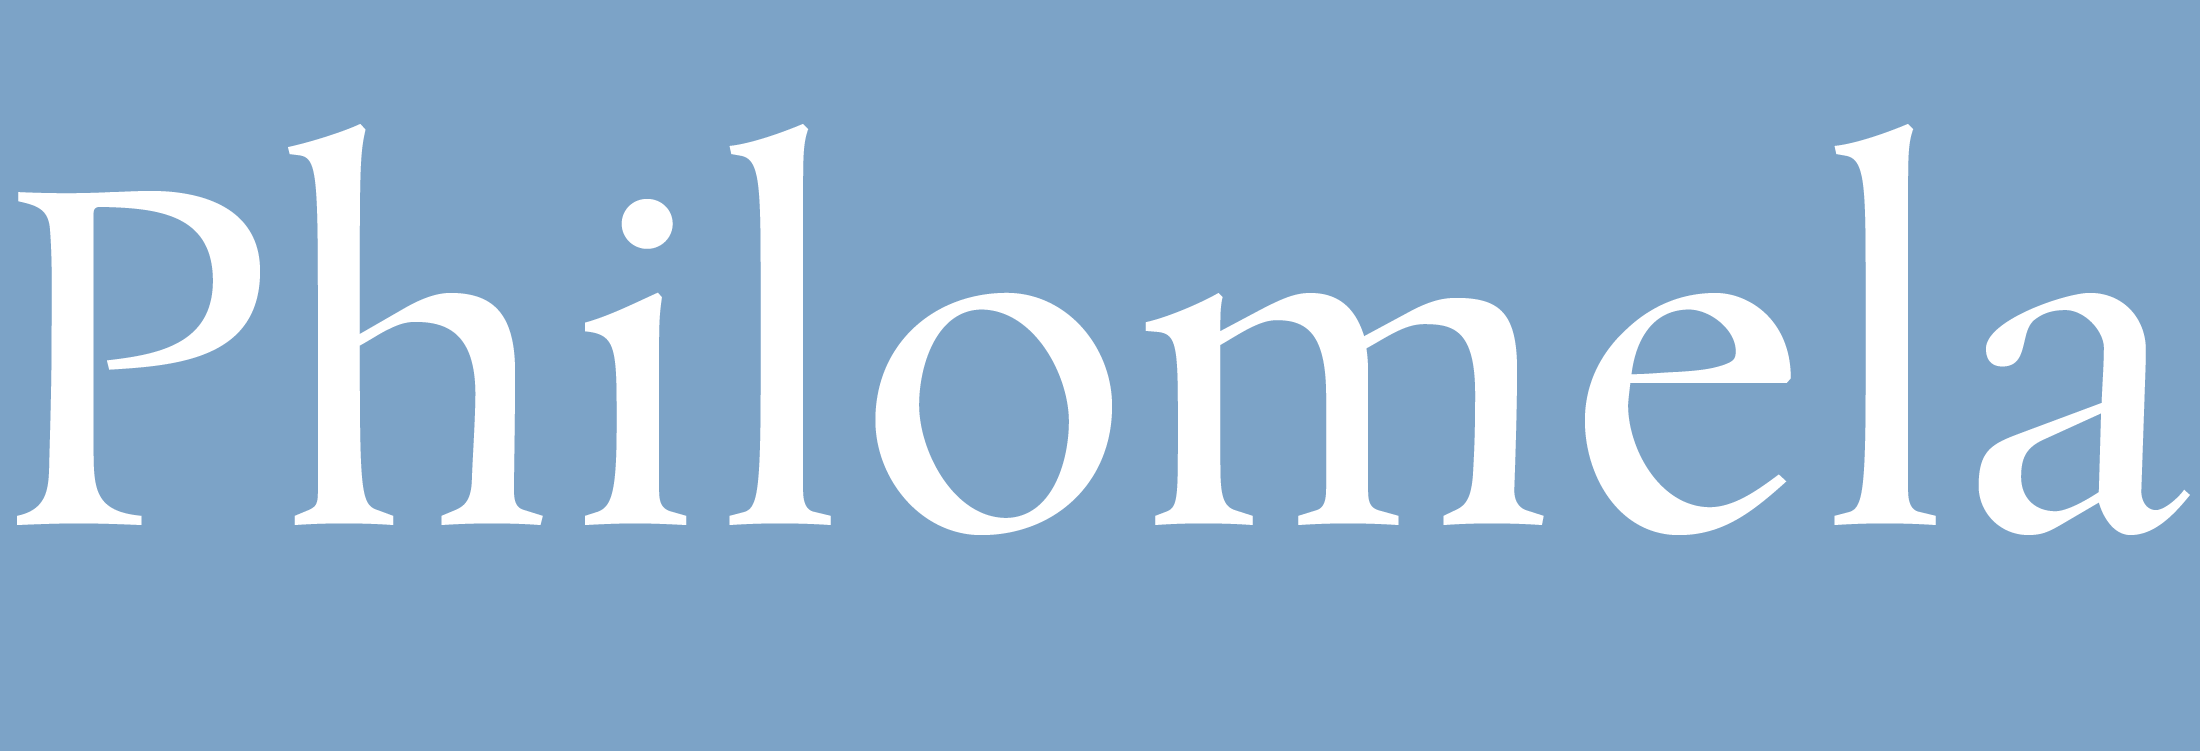 Philomela Font Banner